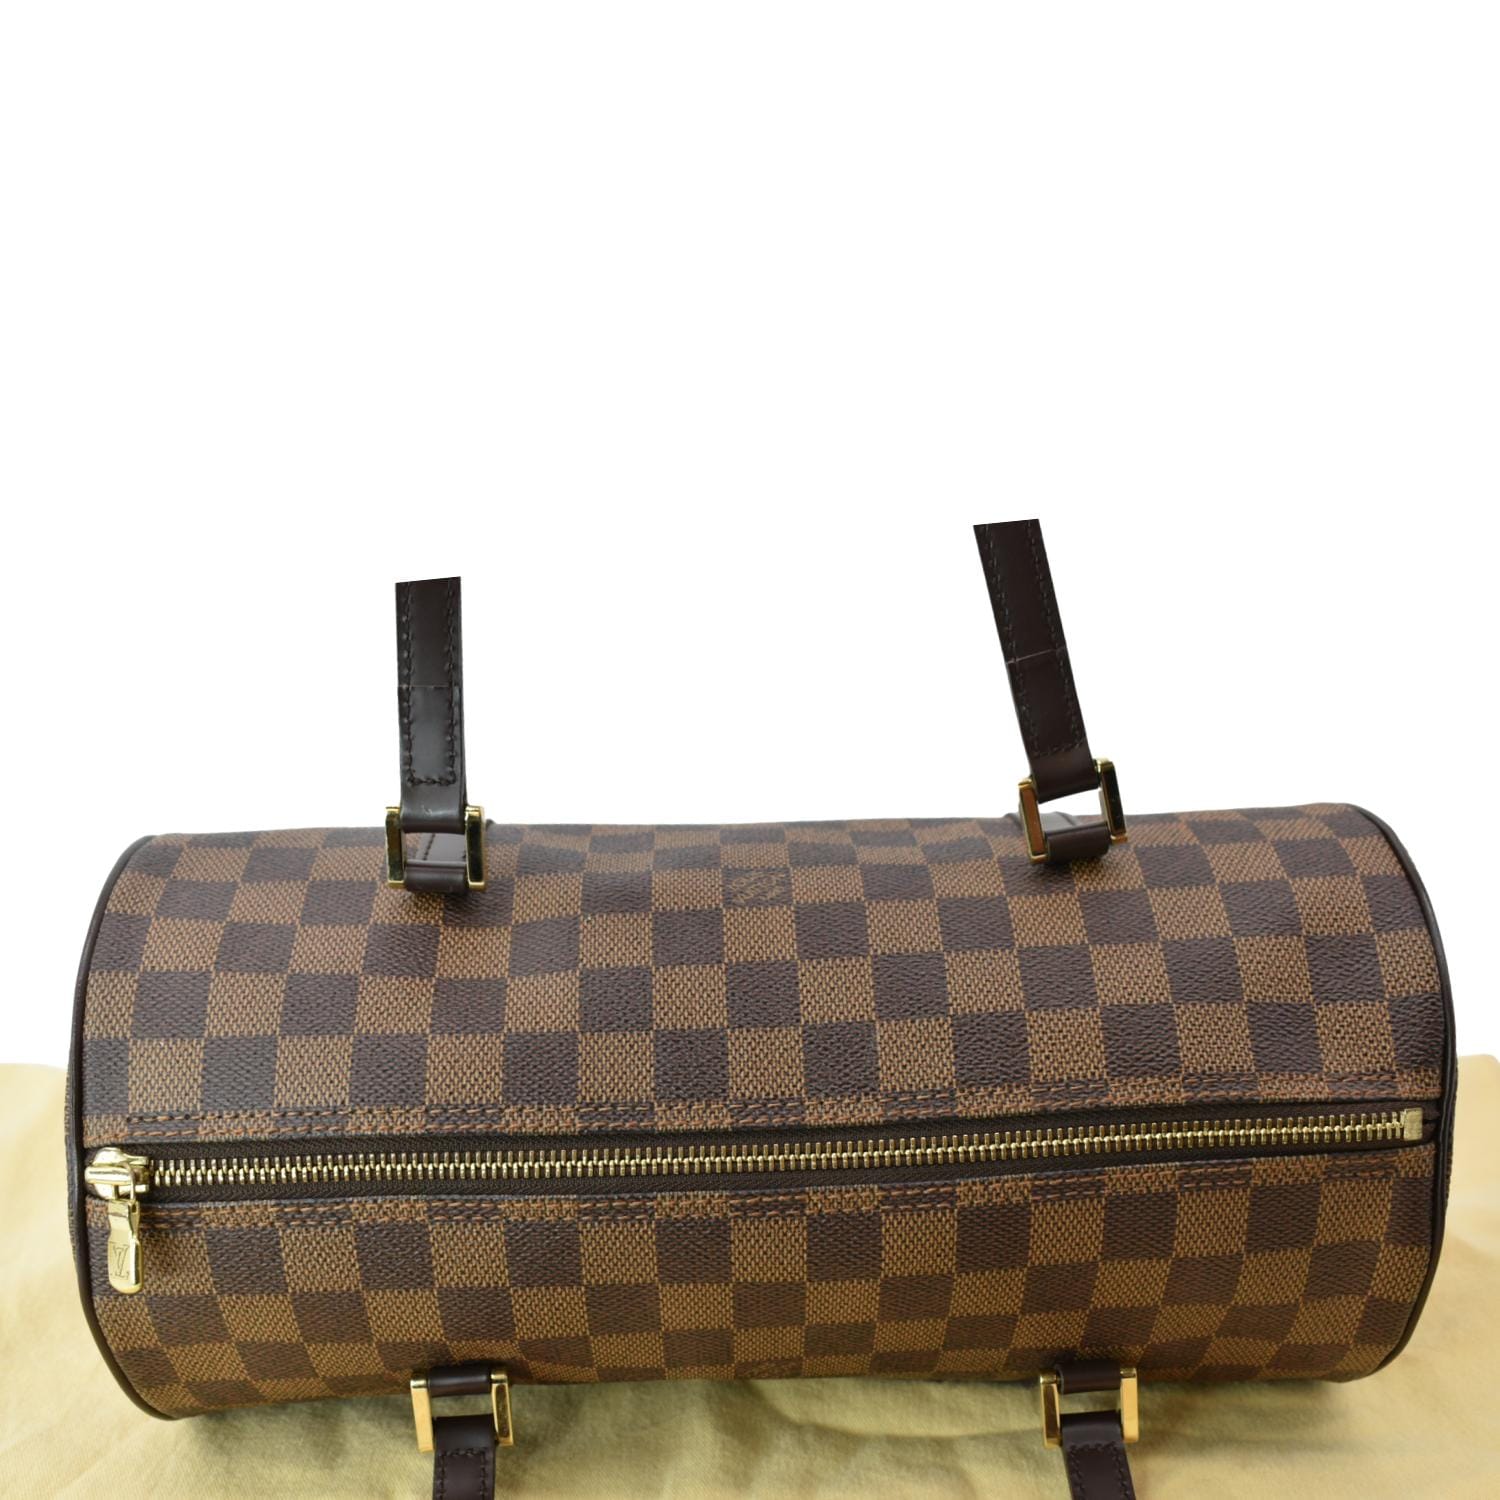 Preowned Authentic Louis Vuitton Damier Papillon Barrel Bag